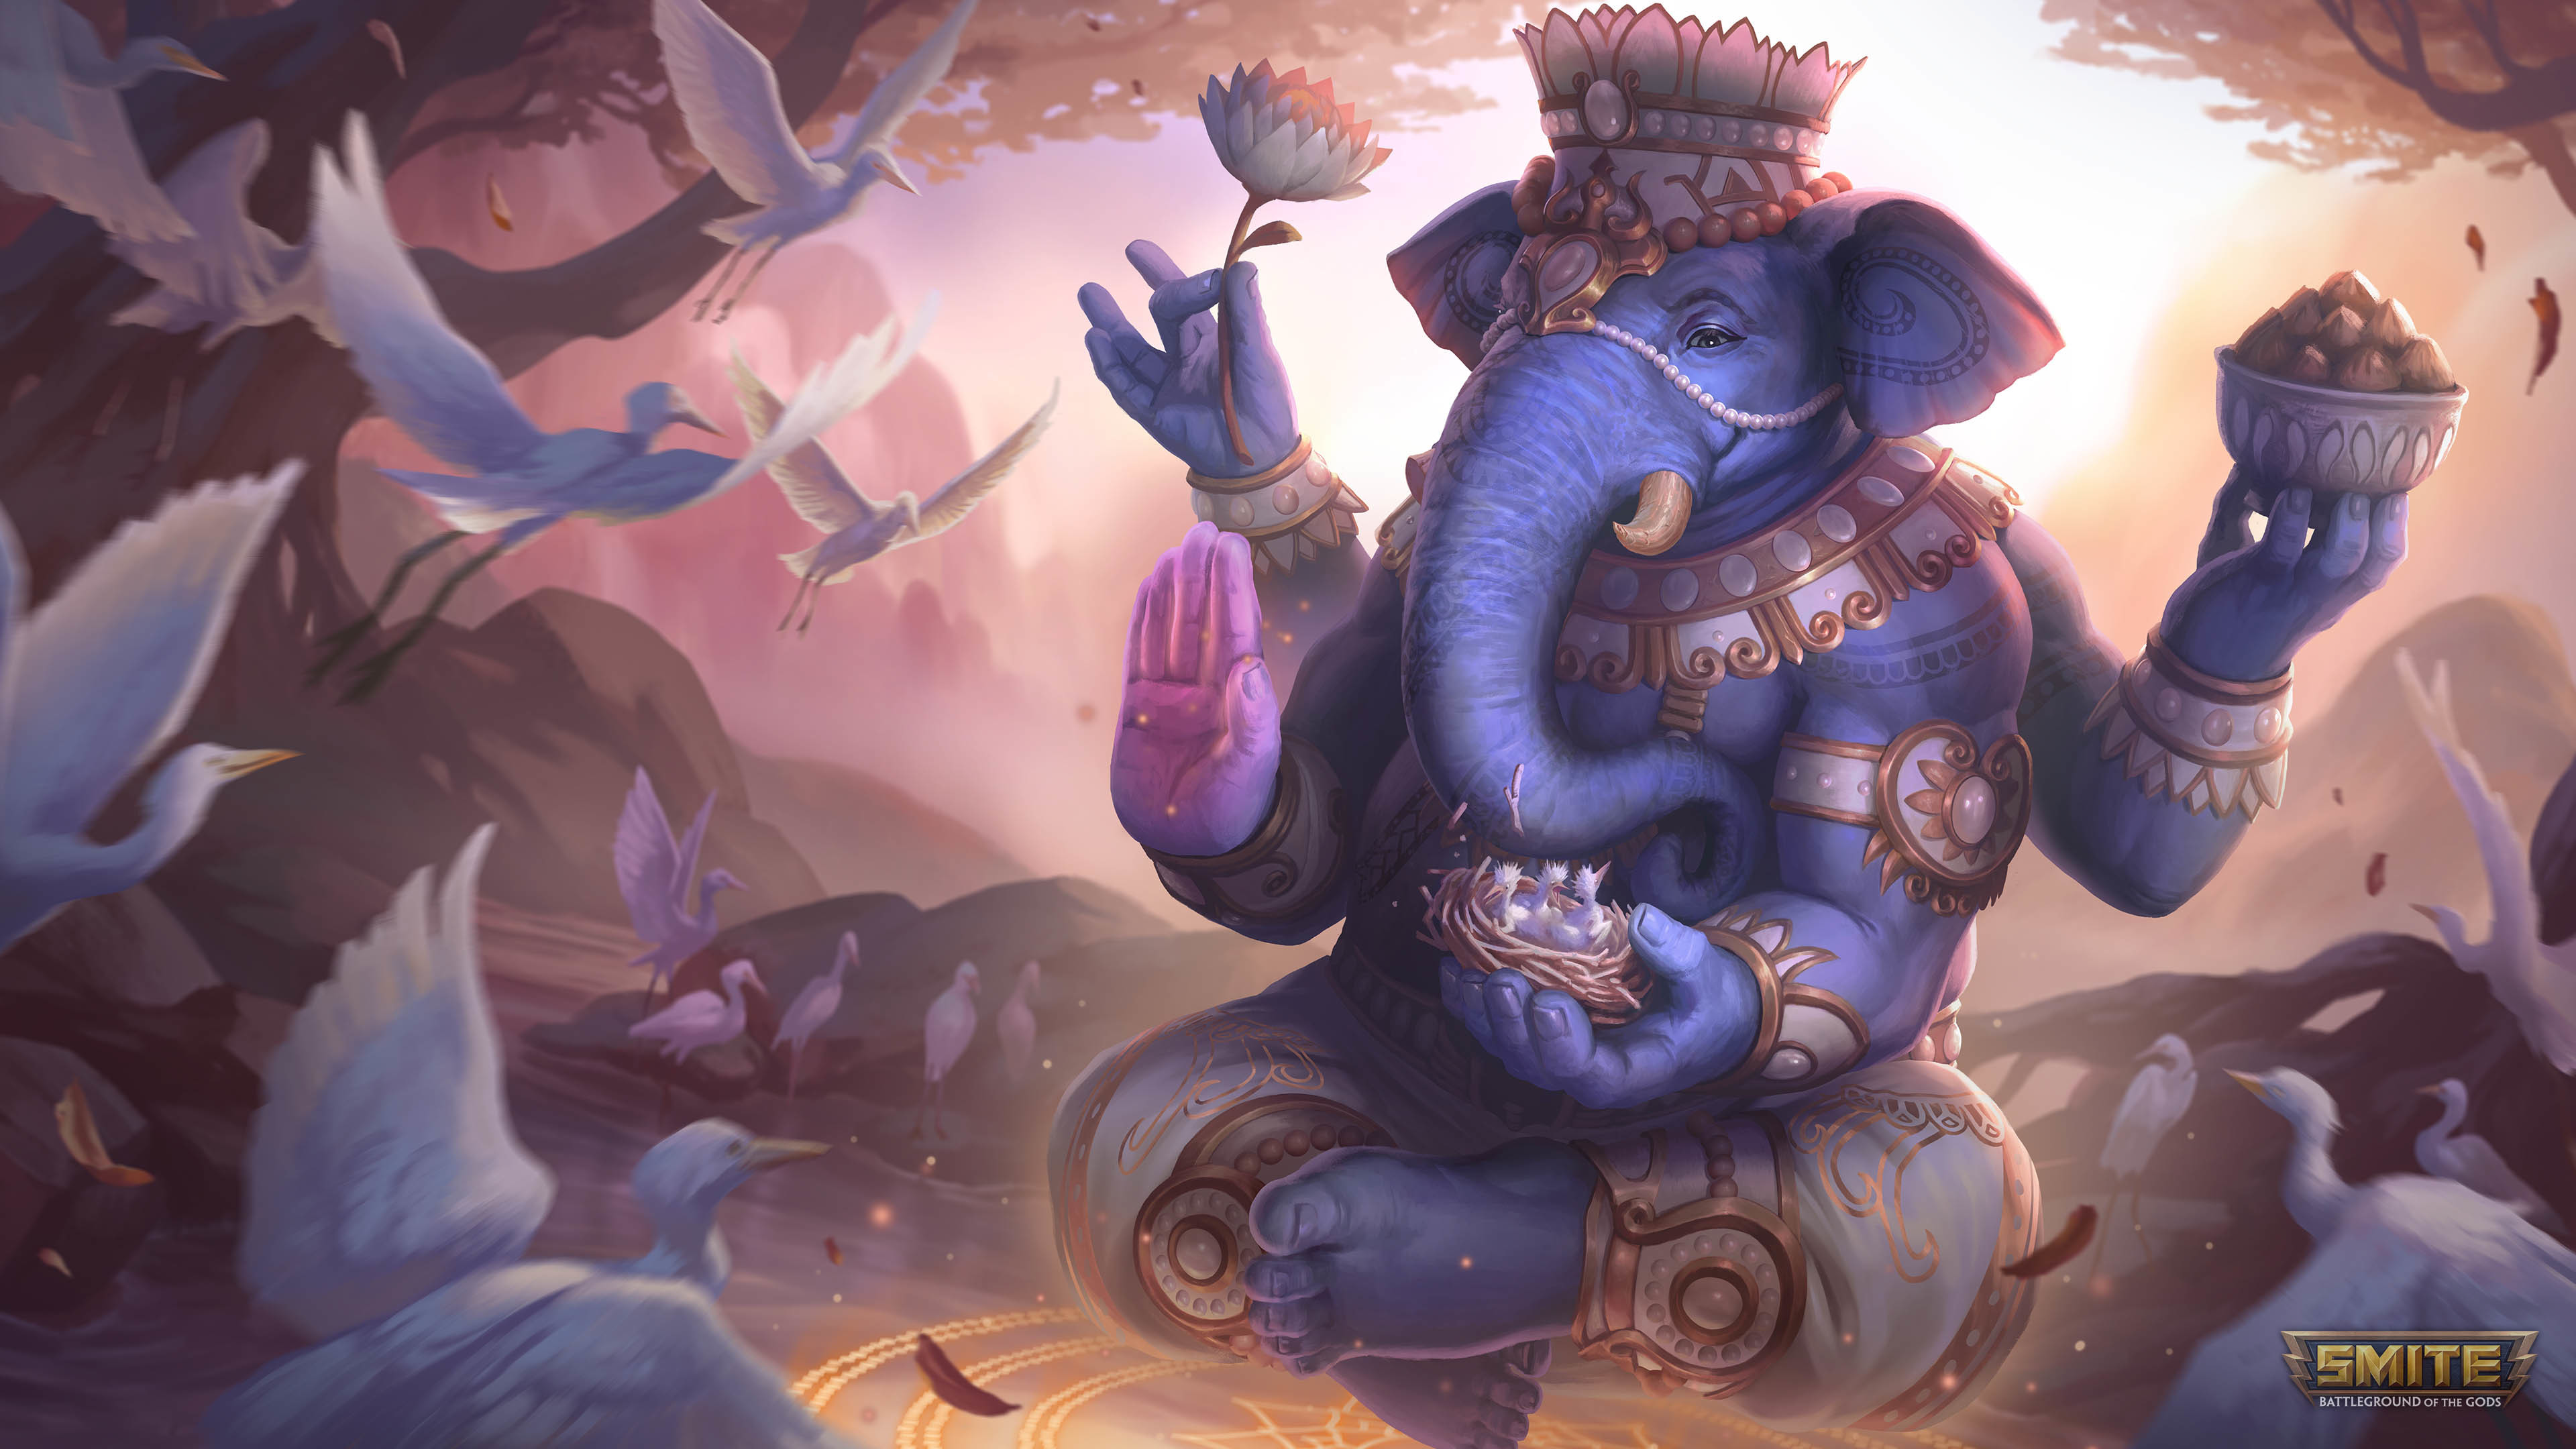 Ganesh Ganesha Smite Birds Elephant Smite Watermarked Jewelry Body Jewelry Flowers Nests Anthro Muha 3840x2160